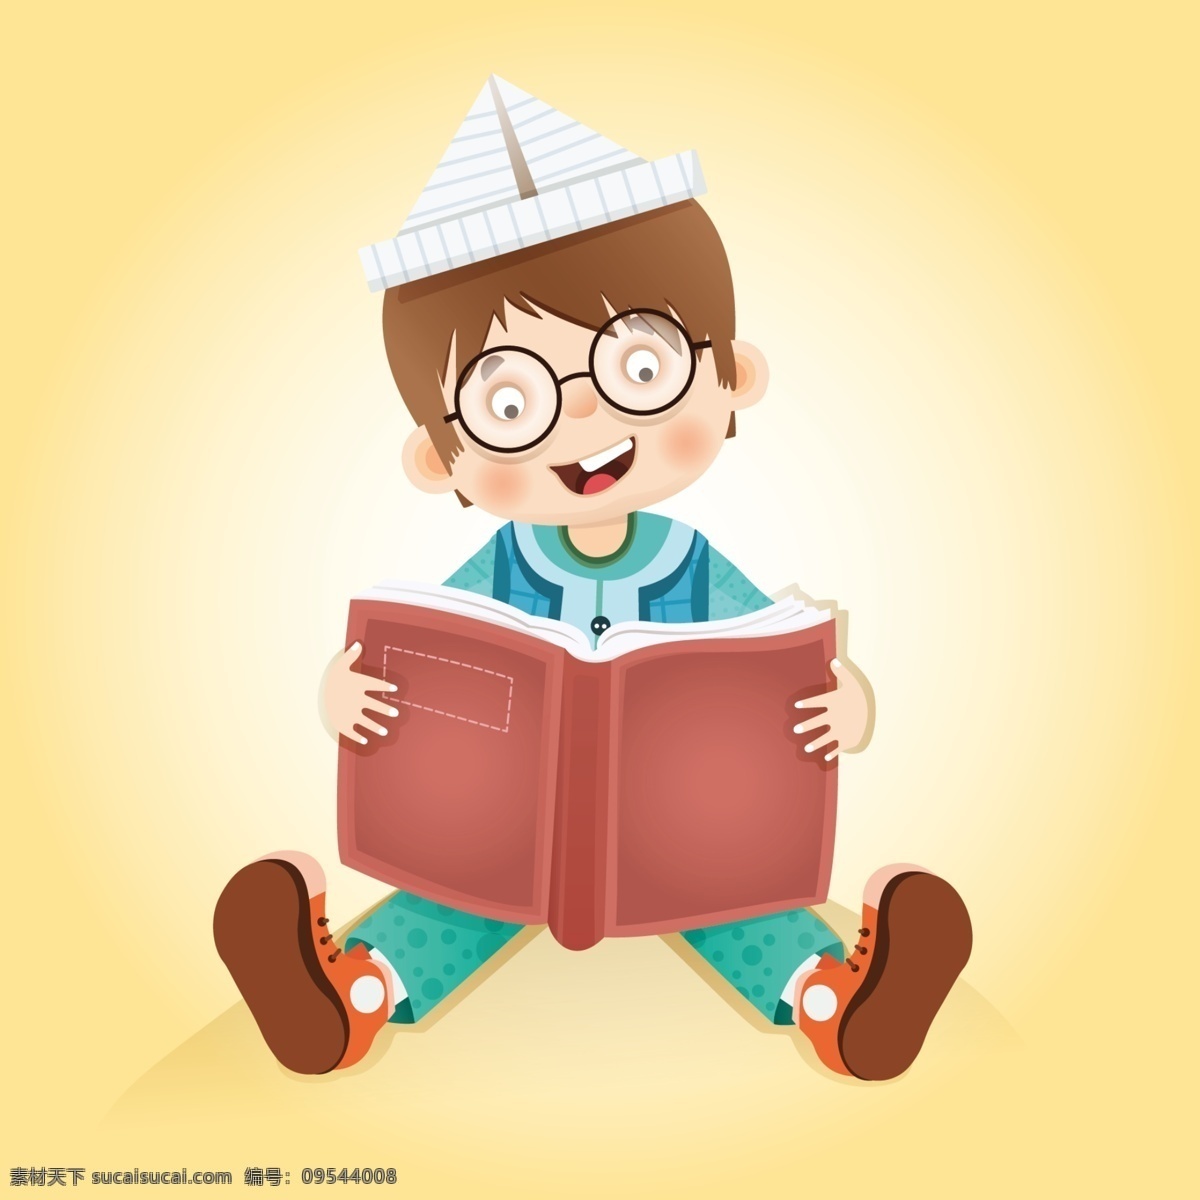 卡通 小孩 书 读书 小孩读书 小孩那书 戴眼镜 帽子 小孩笑容